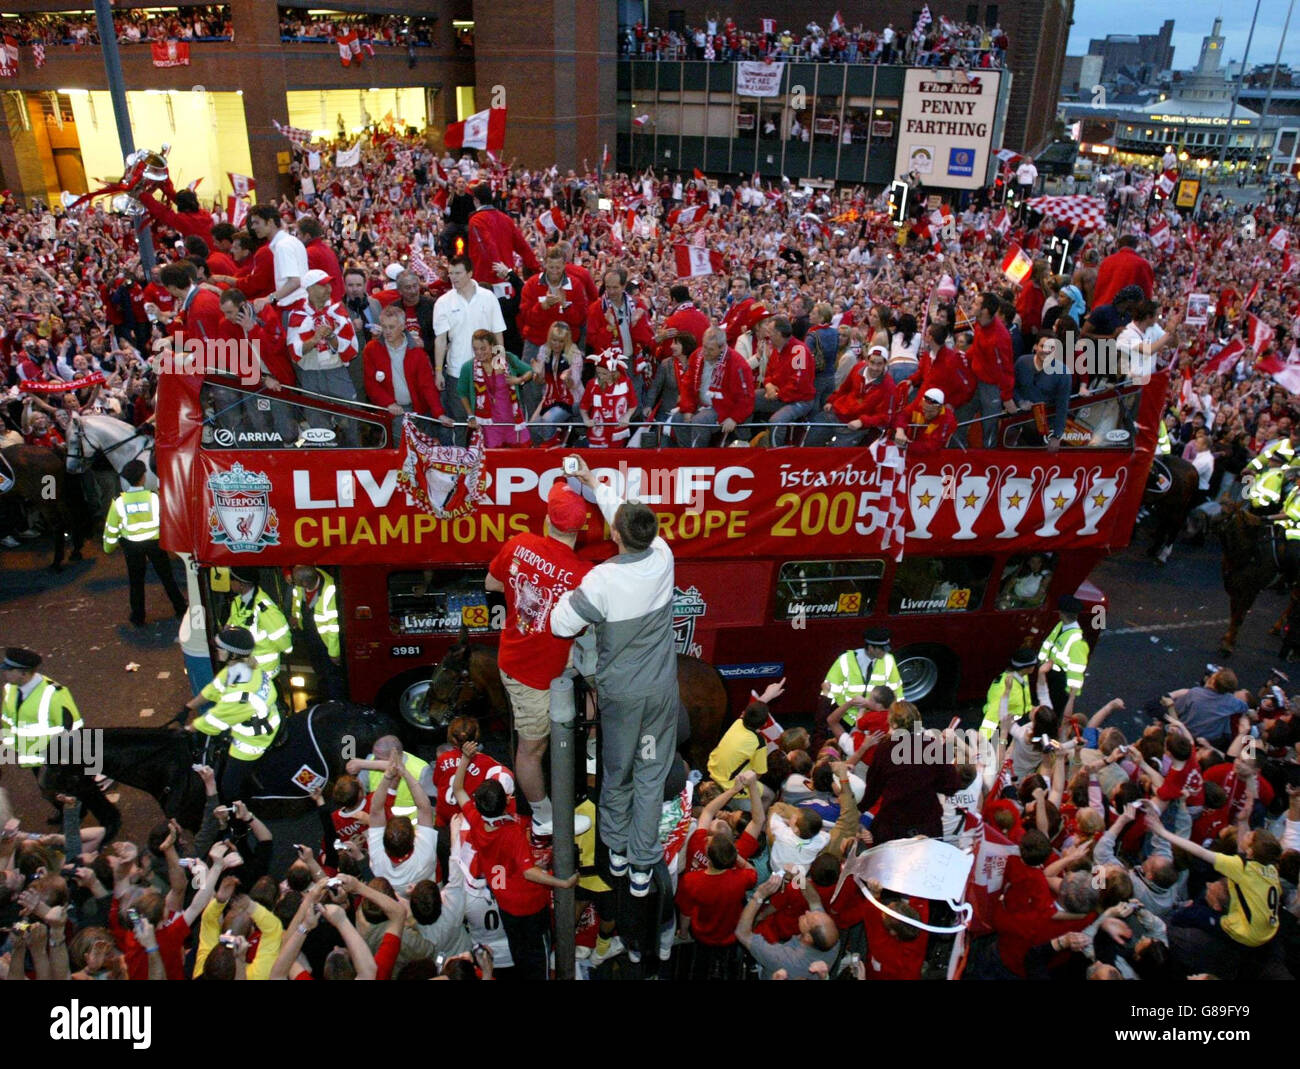 Calcio - UEFA Champions League - Parata dei vincitori - Liverpool. I giocatori di Liverpool festeggiano su un autobus scoperto di fronte ai tifosi durante la sfilata della vittoria. Foto Stock